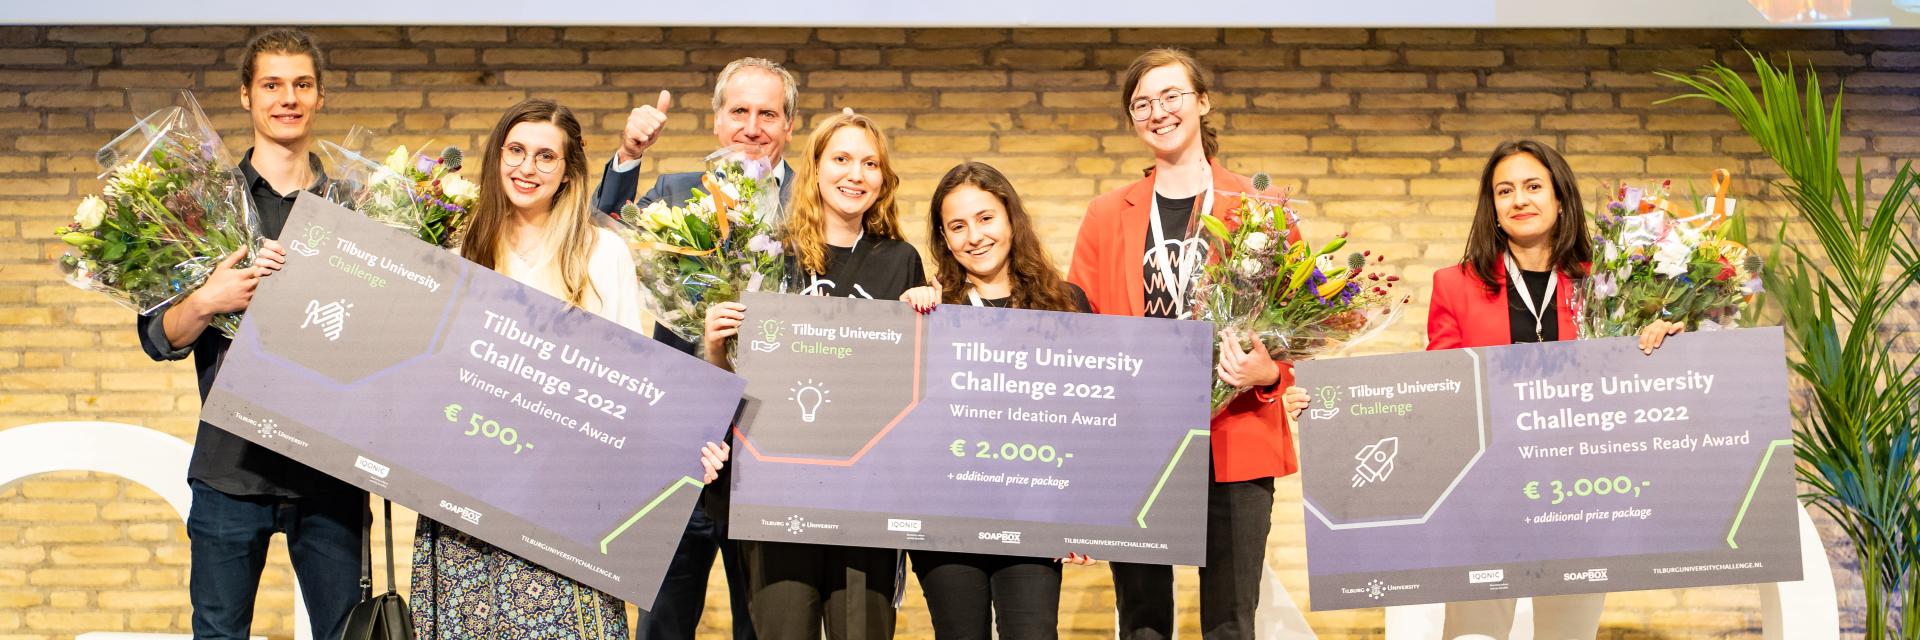 Tilburg University Challenge 2022